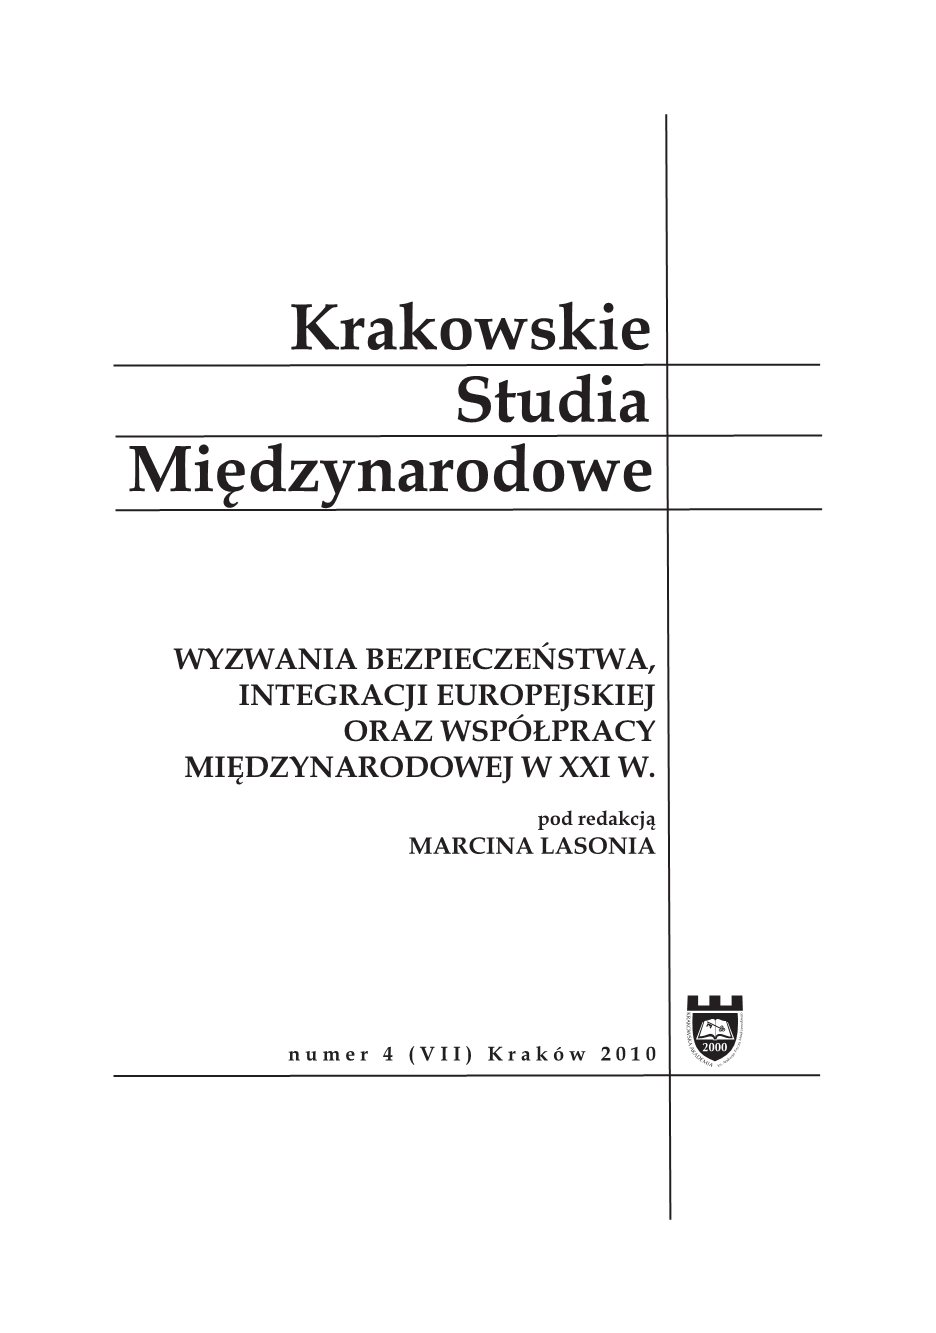 Rosja. Ambicje i możliwości w XXI wieku, red. Kazimierz Albin Kłosiński [Wydawnictwo KUL, Lublin 2010, 368 s.]